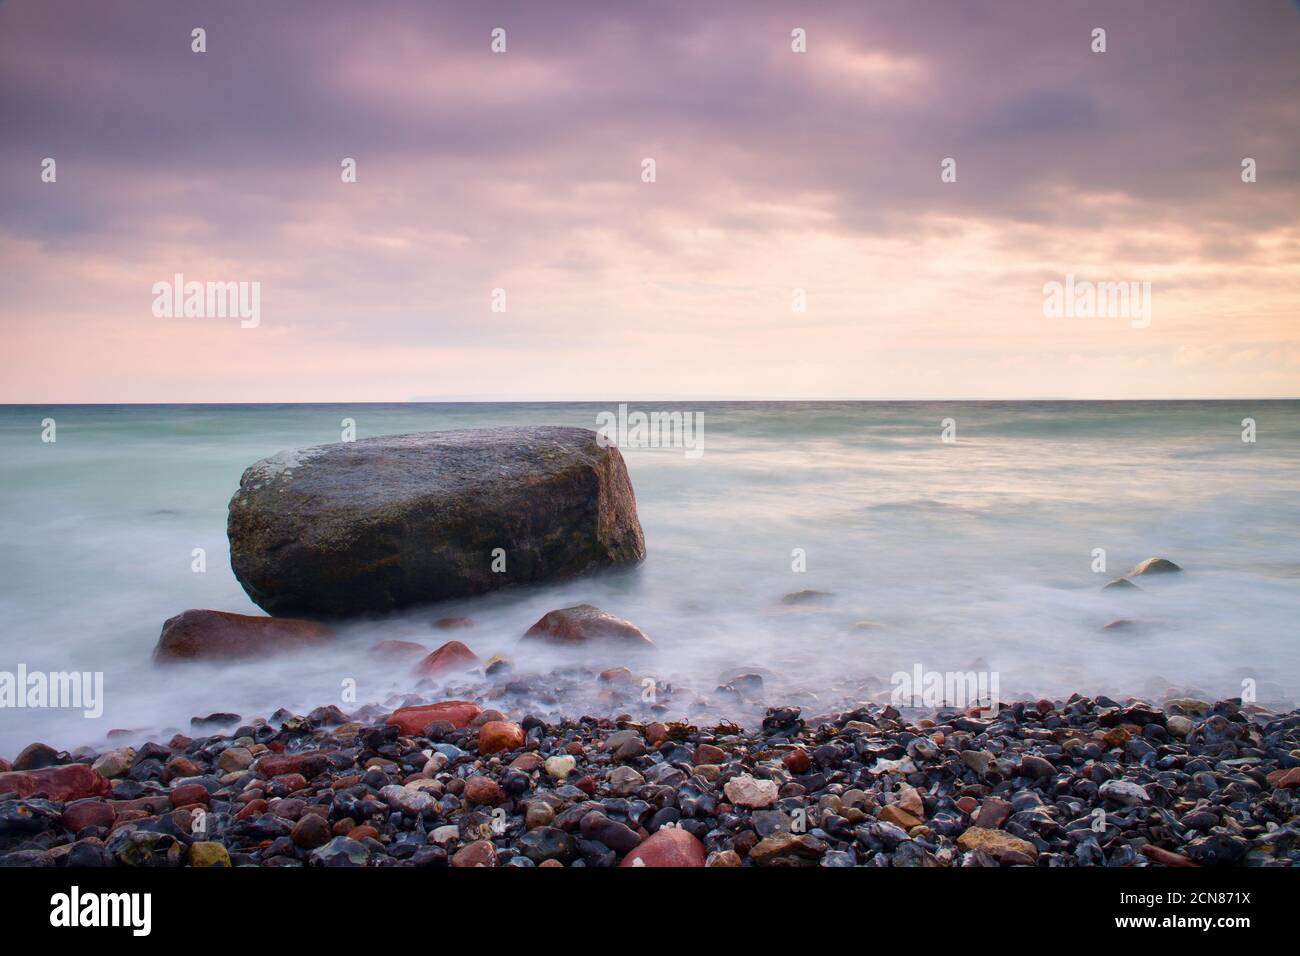 Ambiance romantique dans une matinée paisible en mer. De gros blocs qui sortent d'une mer ondulée et lisse. Horizon rose Banque D'Images